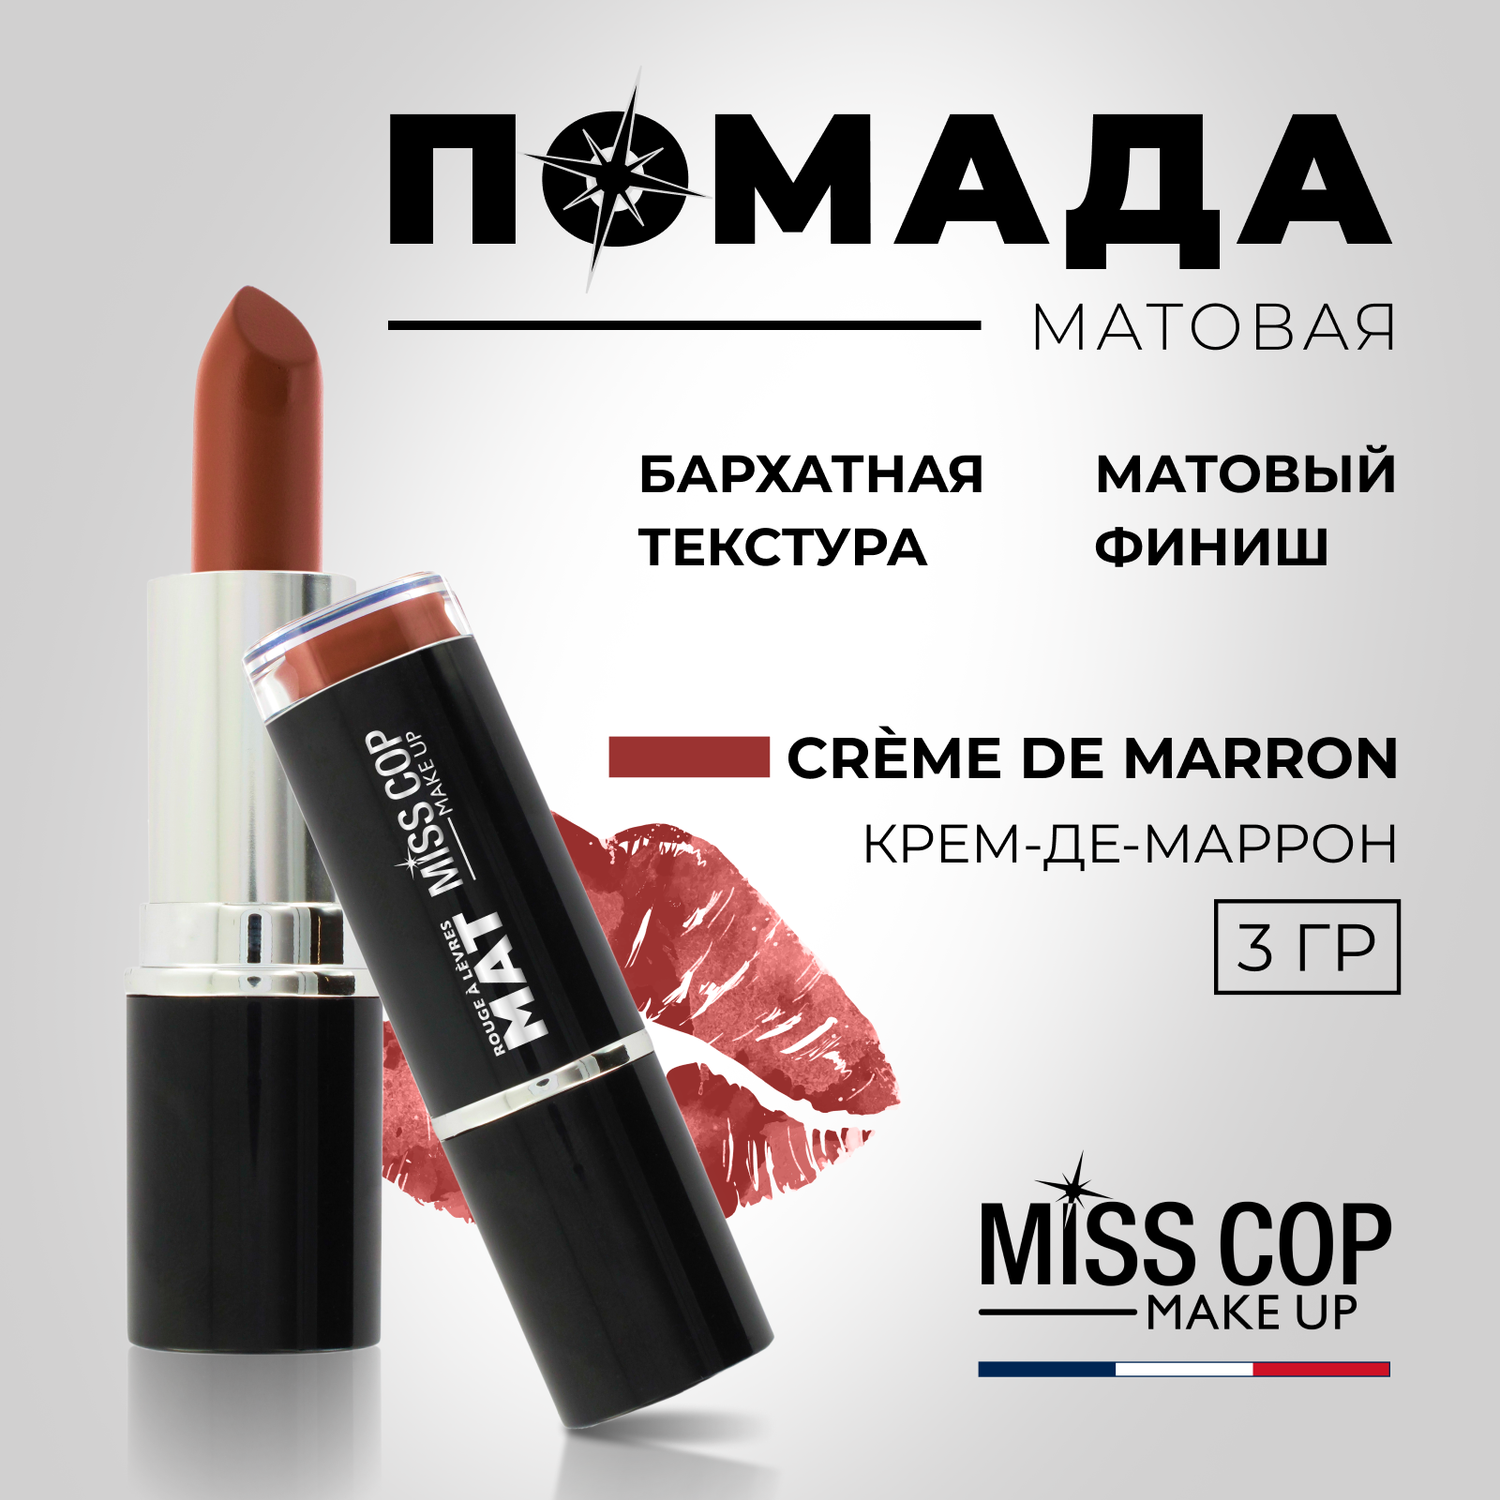 Помада губная матовая Miss Cop Франция цвет 10 Creme de marron каштановый крем 3 г - фото 2